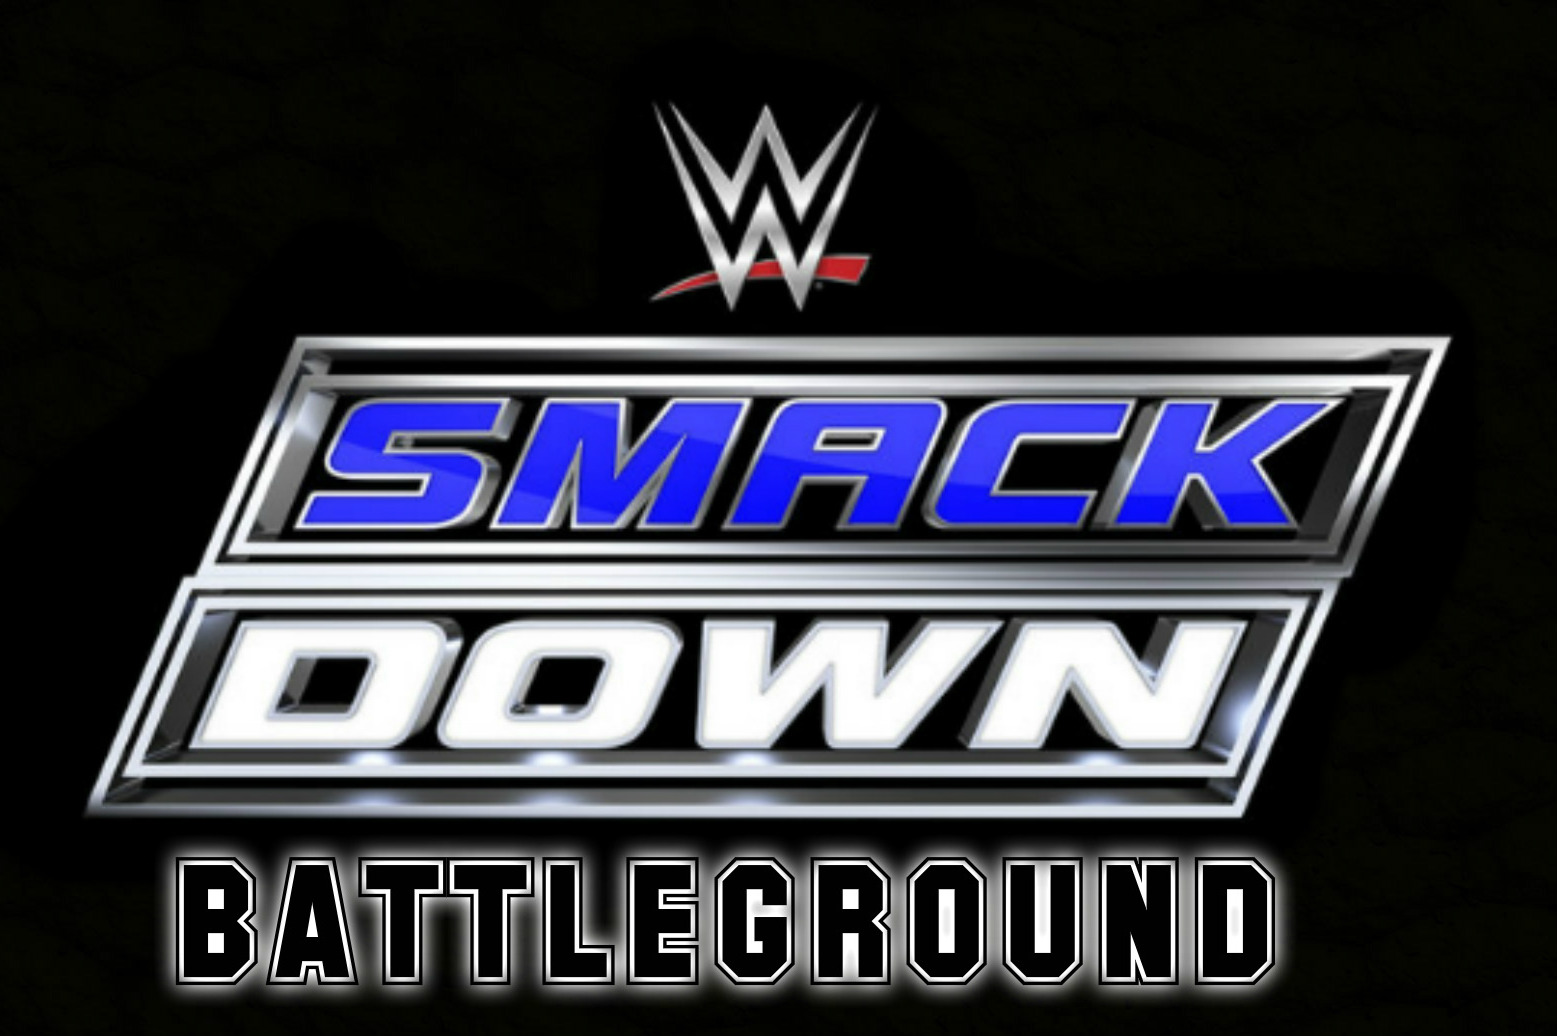 WWE Battleground 24 July (2016)